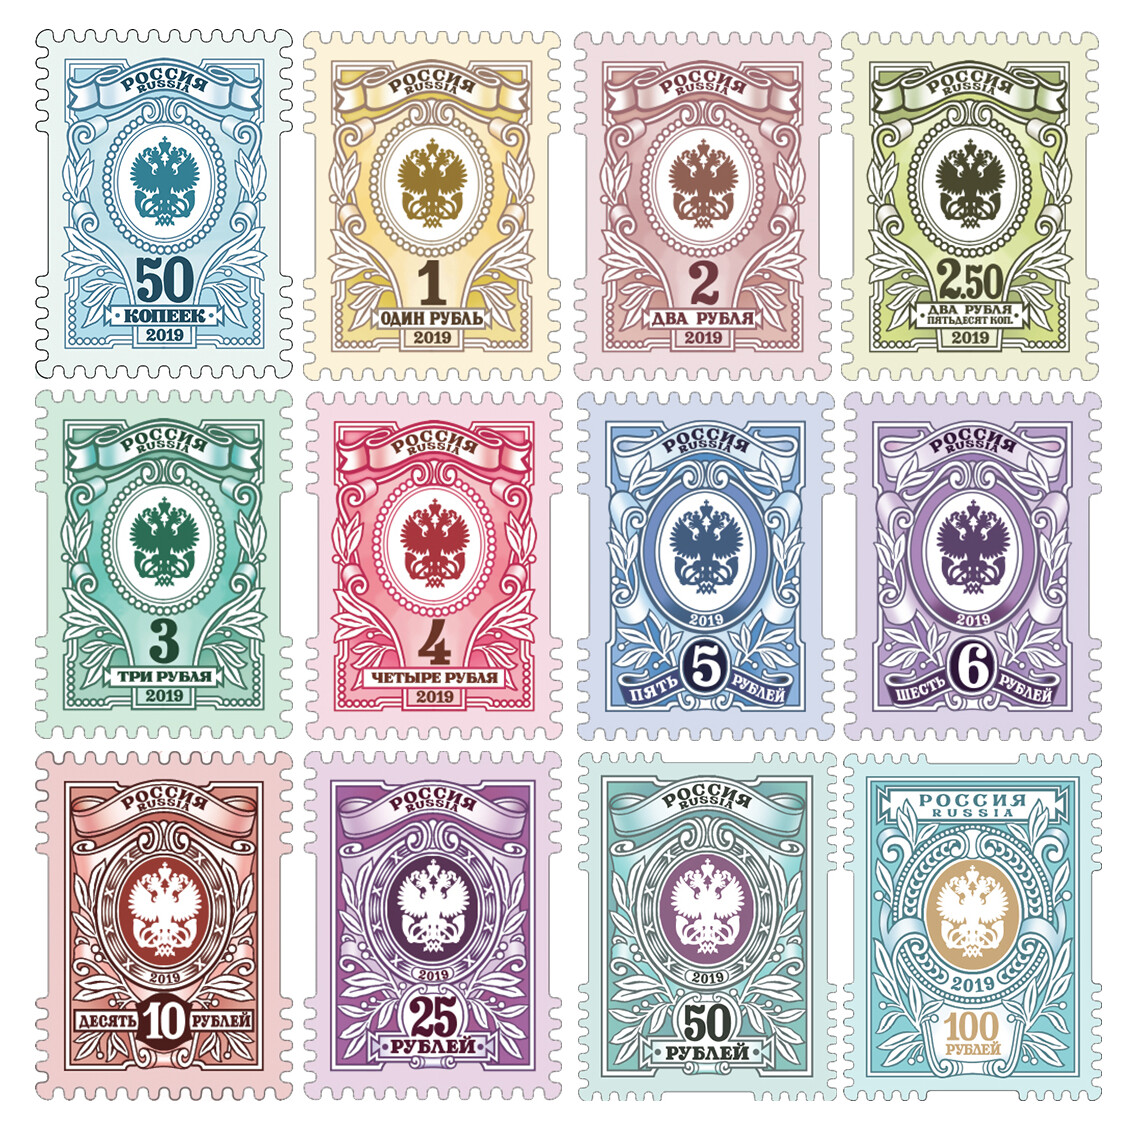 РФ. Седьмой выпуск стандартных почтовых марок. Серия из 12 самоклеящихся марок